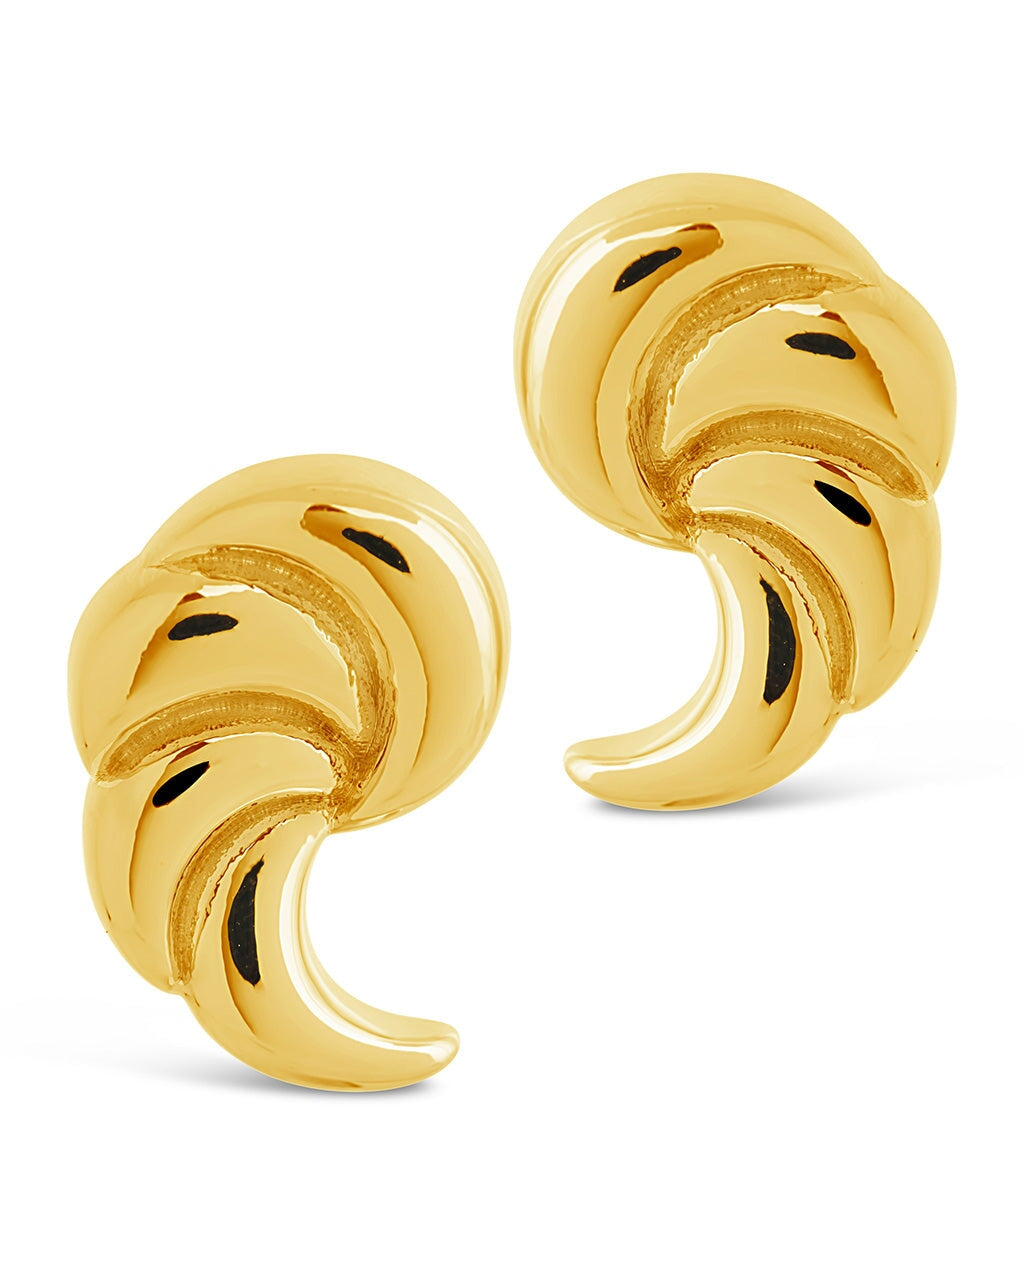 French Horn Stud Earrings Earring Sterling Forever 